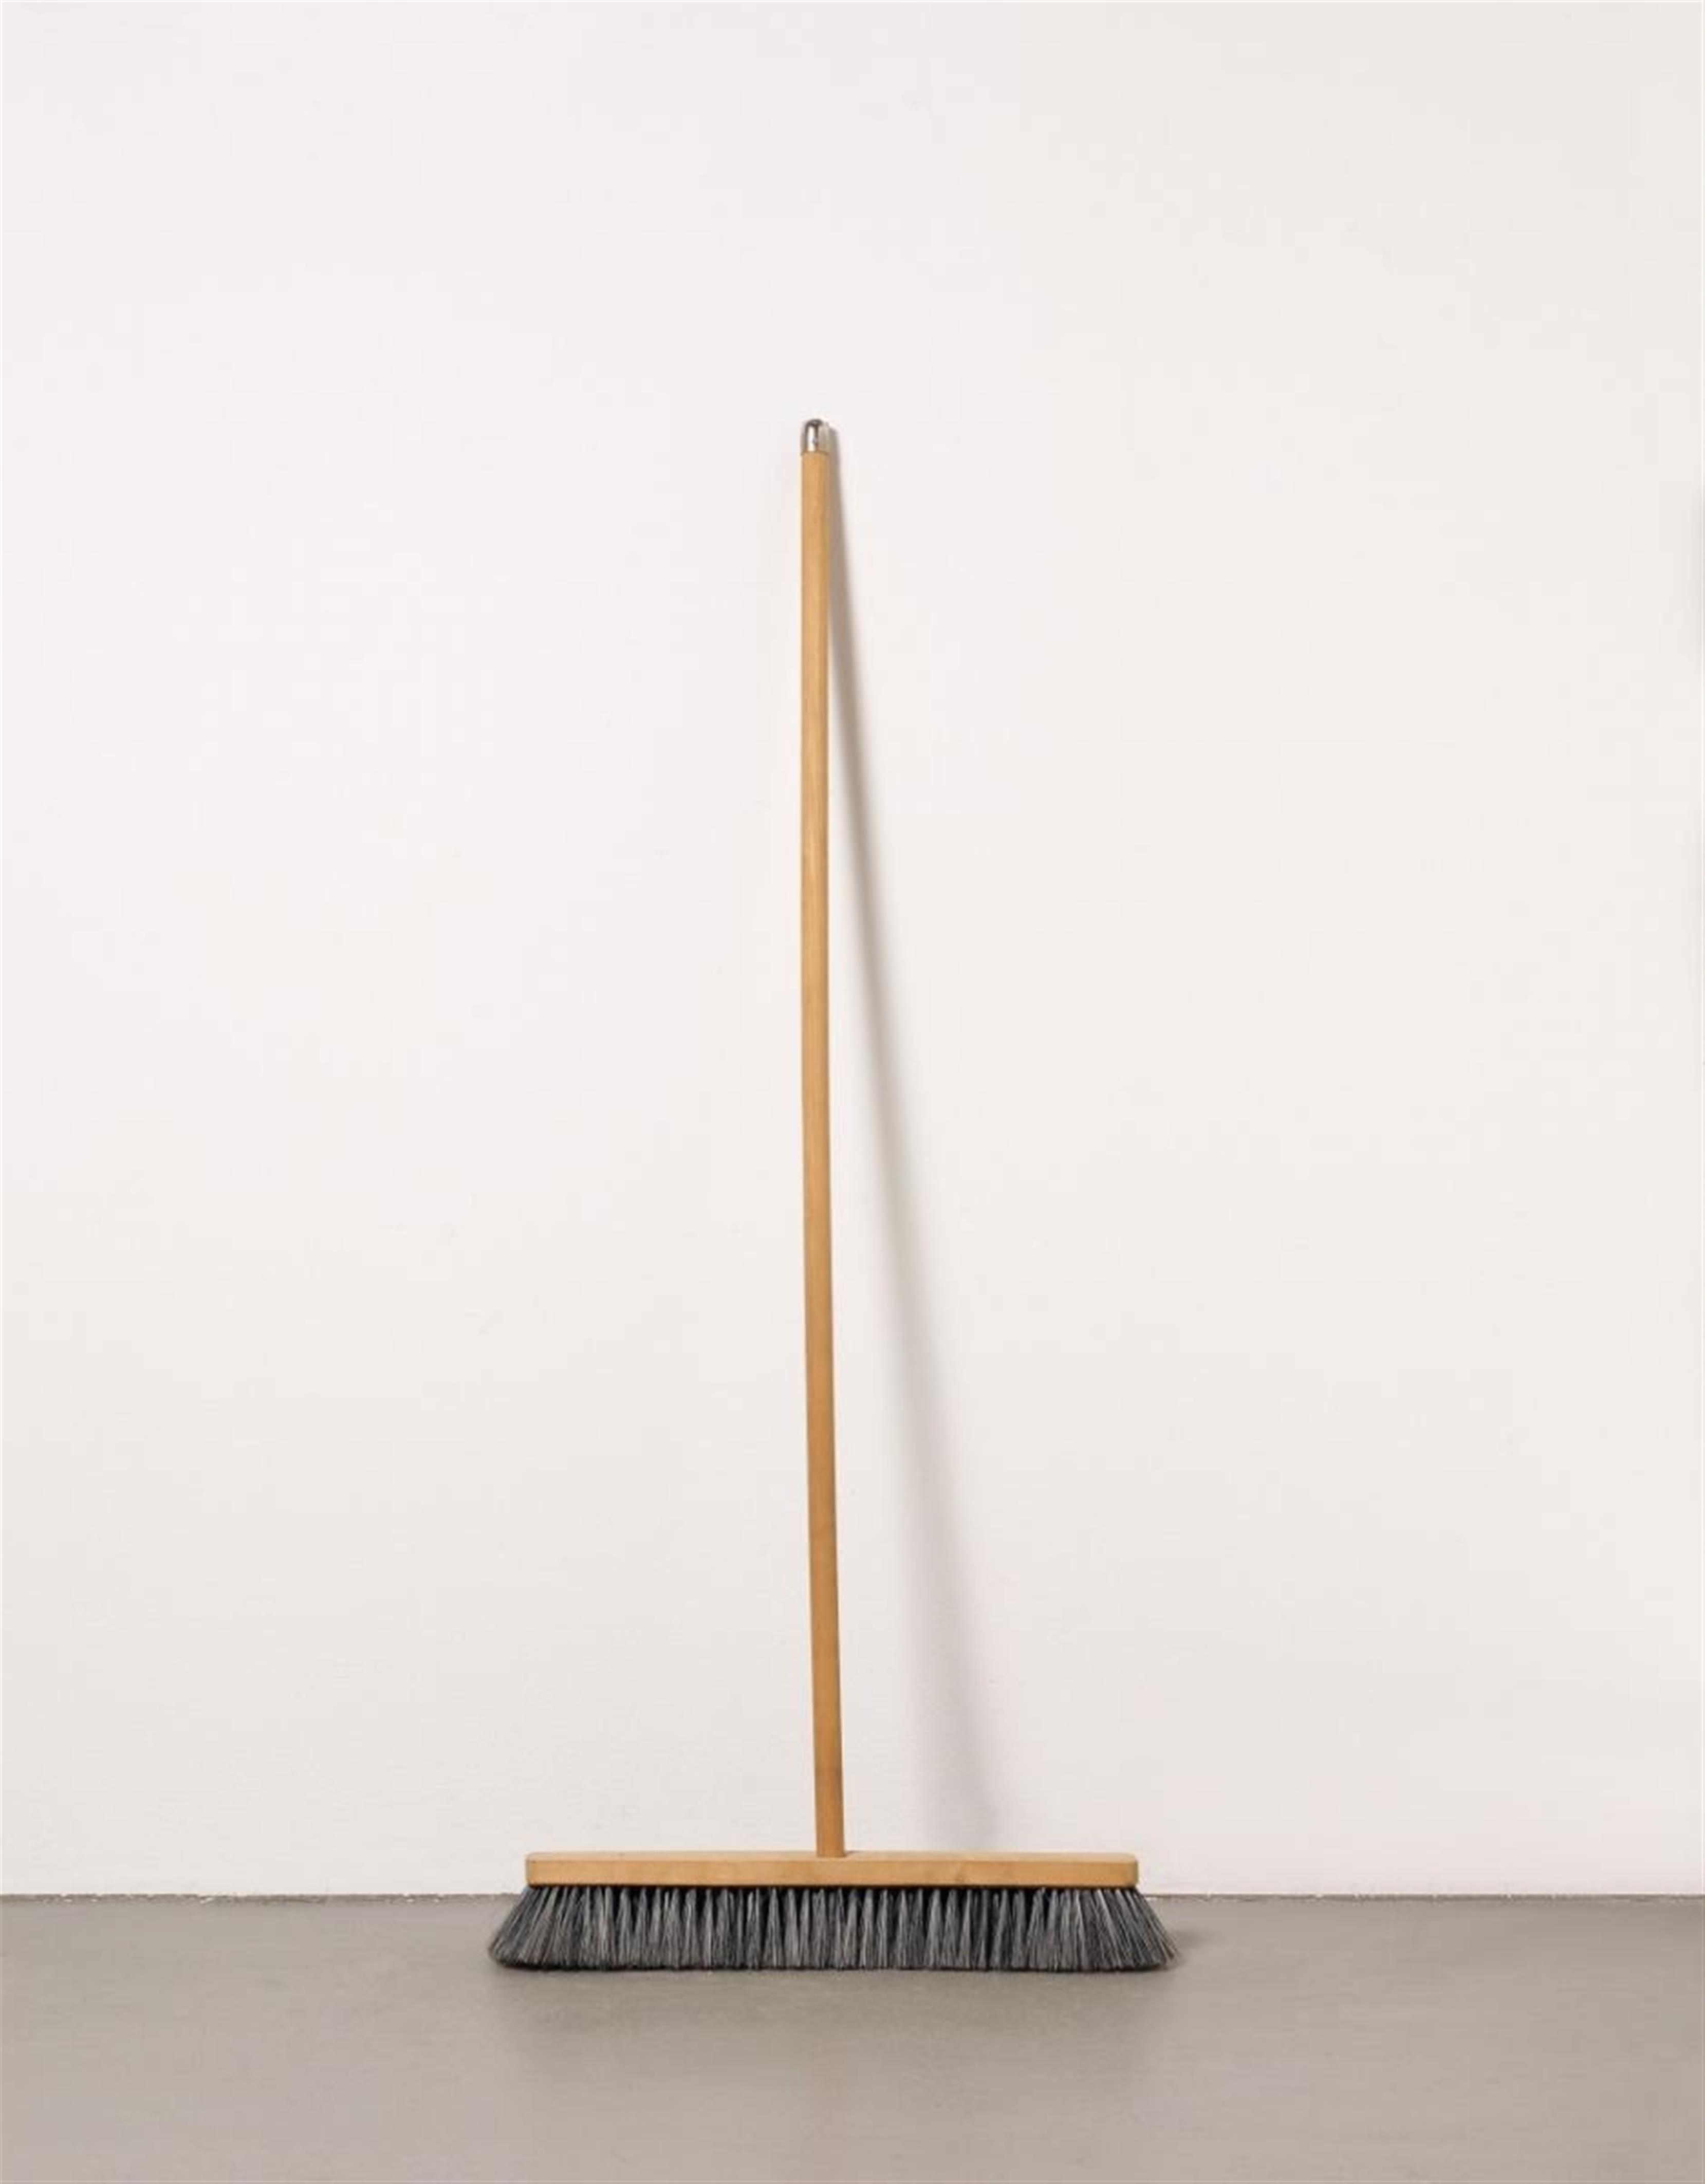 Joseph Beuys - Für gebohnerte Ware - image-1